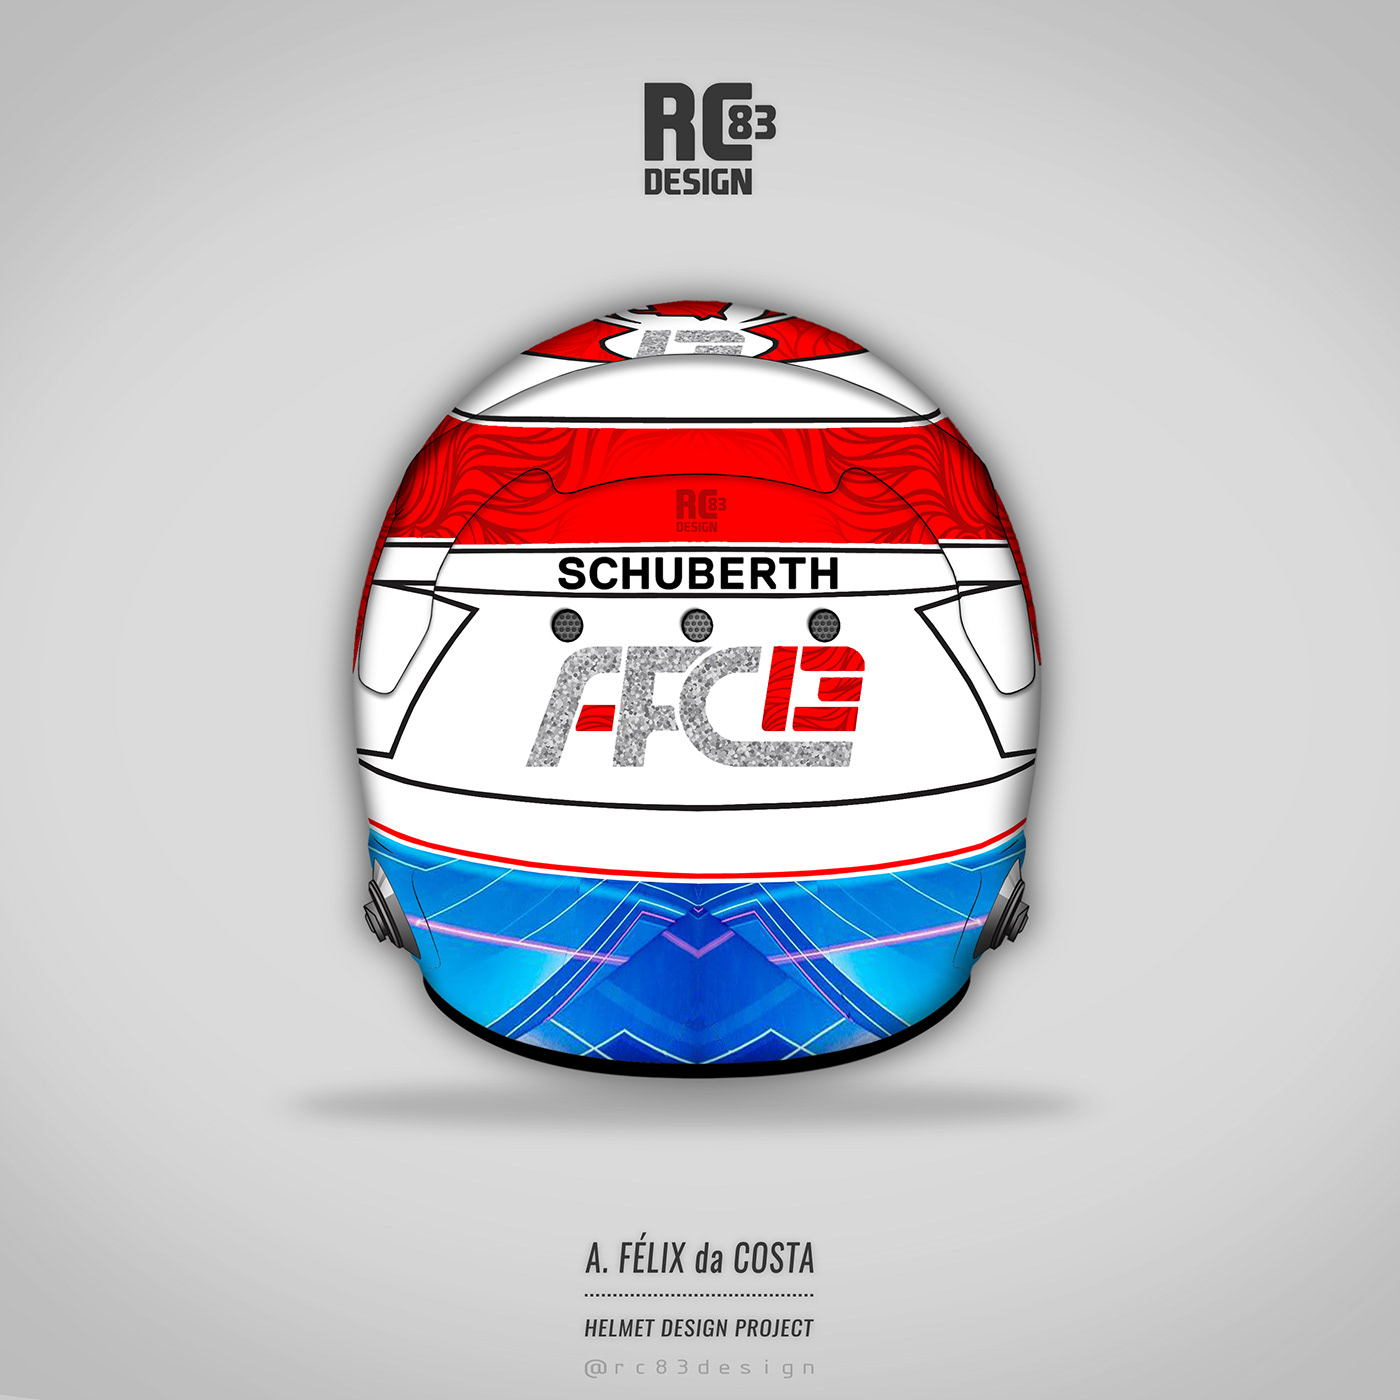 Helmet helmet design helmet art graphic design  Digital Art  NEW DESIGN concept design concept Motorsport rc83design